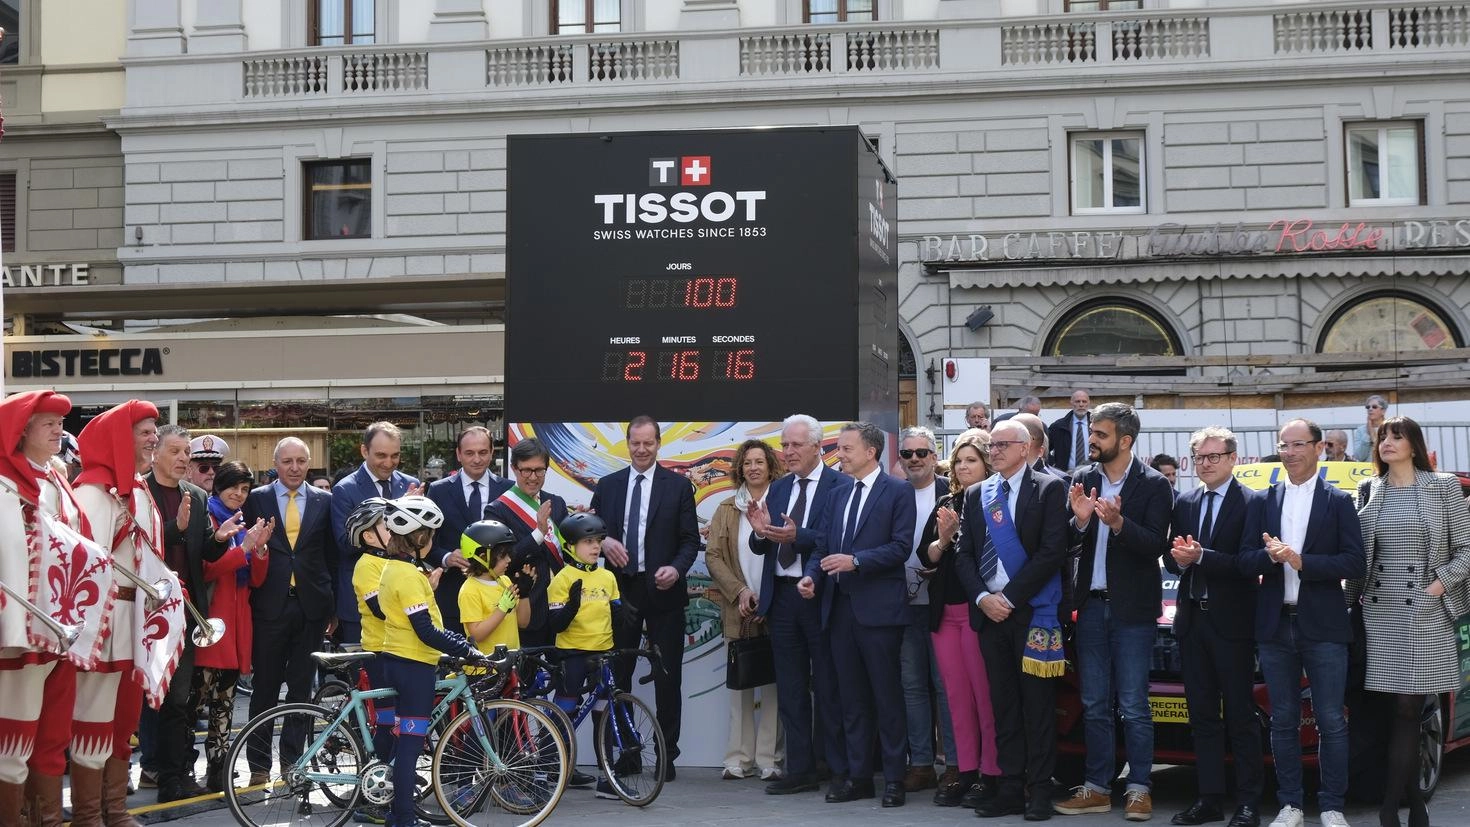 Firenze celebra il Tour de France 2024 con una festa che coinvolge istituzioni e appassionati, anticipando l'arrivo della prestigiosa competizione ciclistica sul territorio italiano.